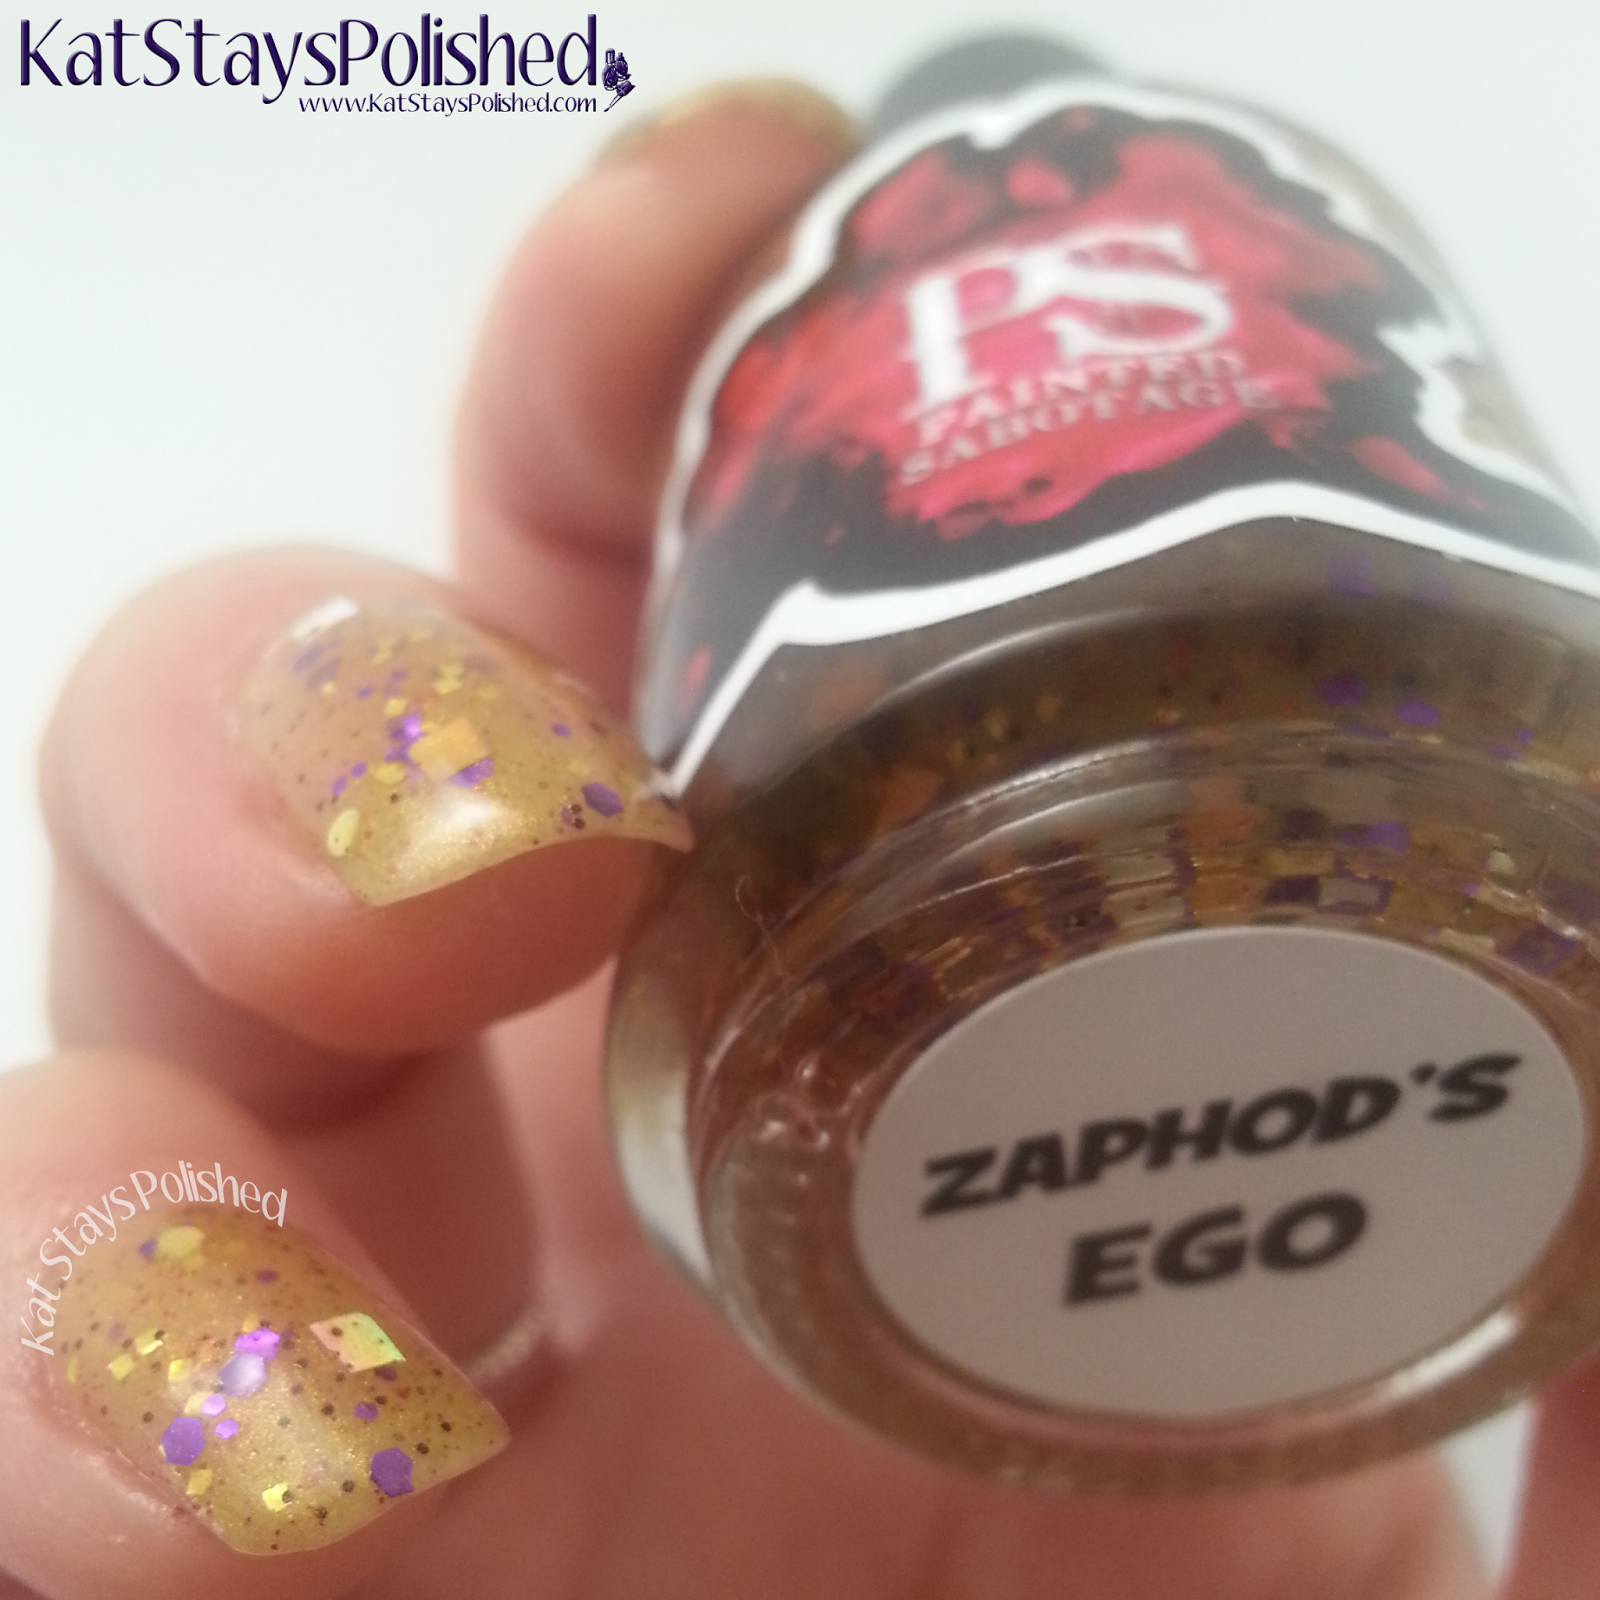 Painted Sabotage - Zaphod's Ego | Kat Stays Polished